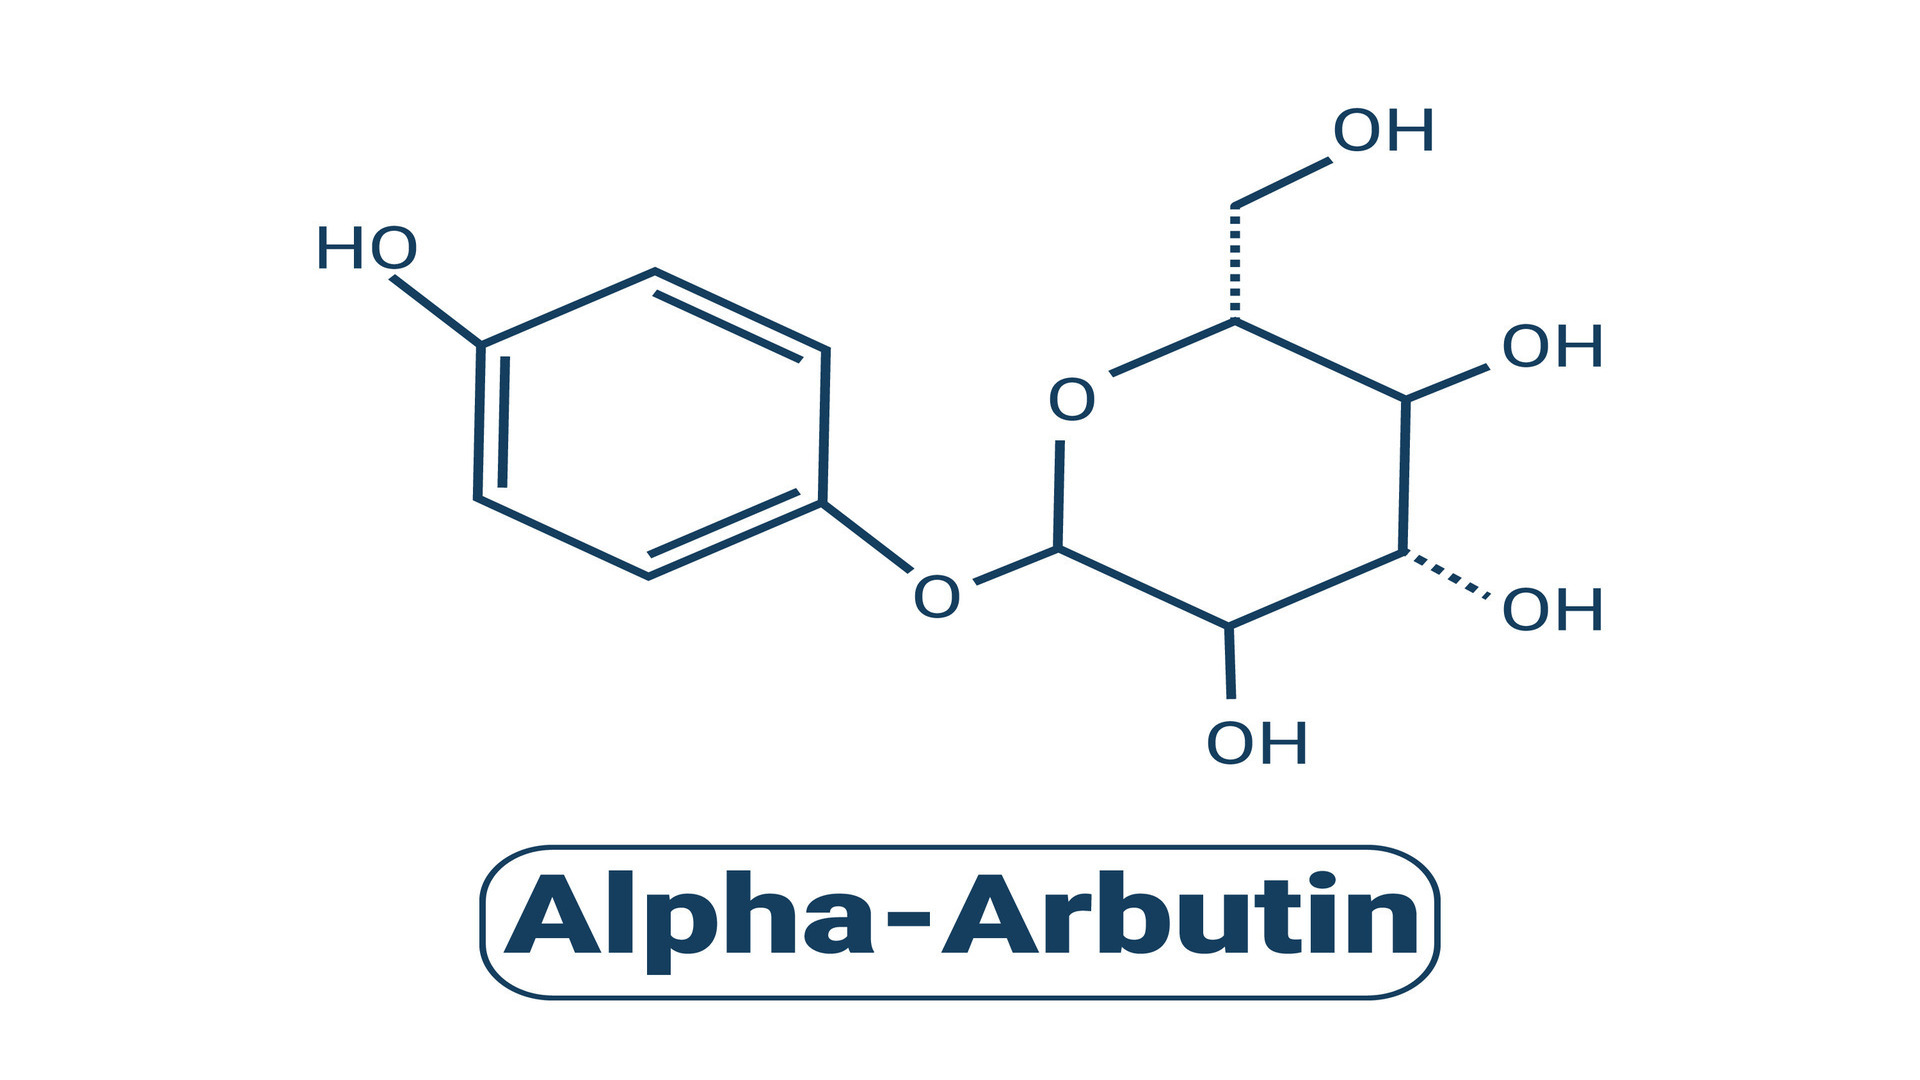 alpha-arbutin-plant-molecule-skeletal-formula-illustration-vector-1.jpg